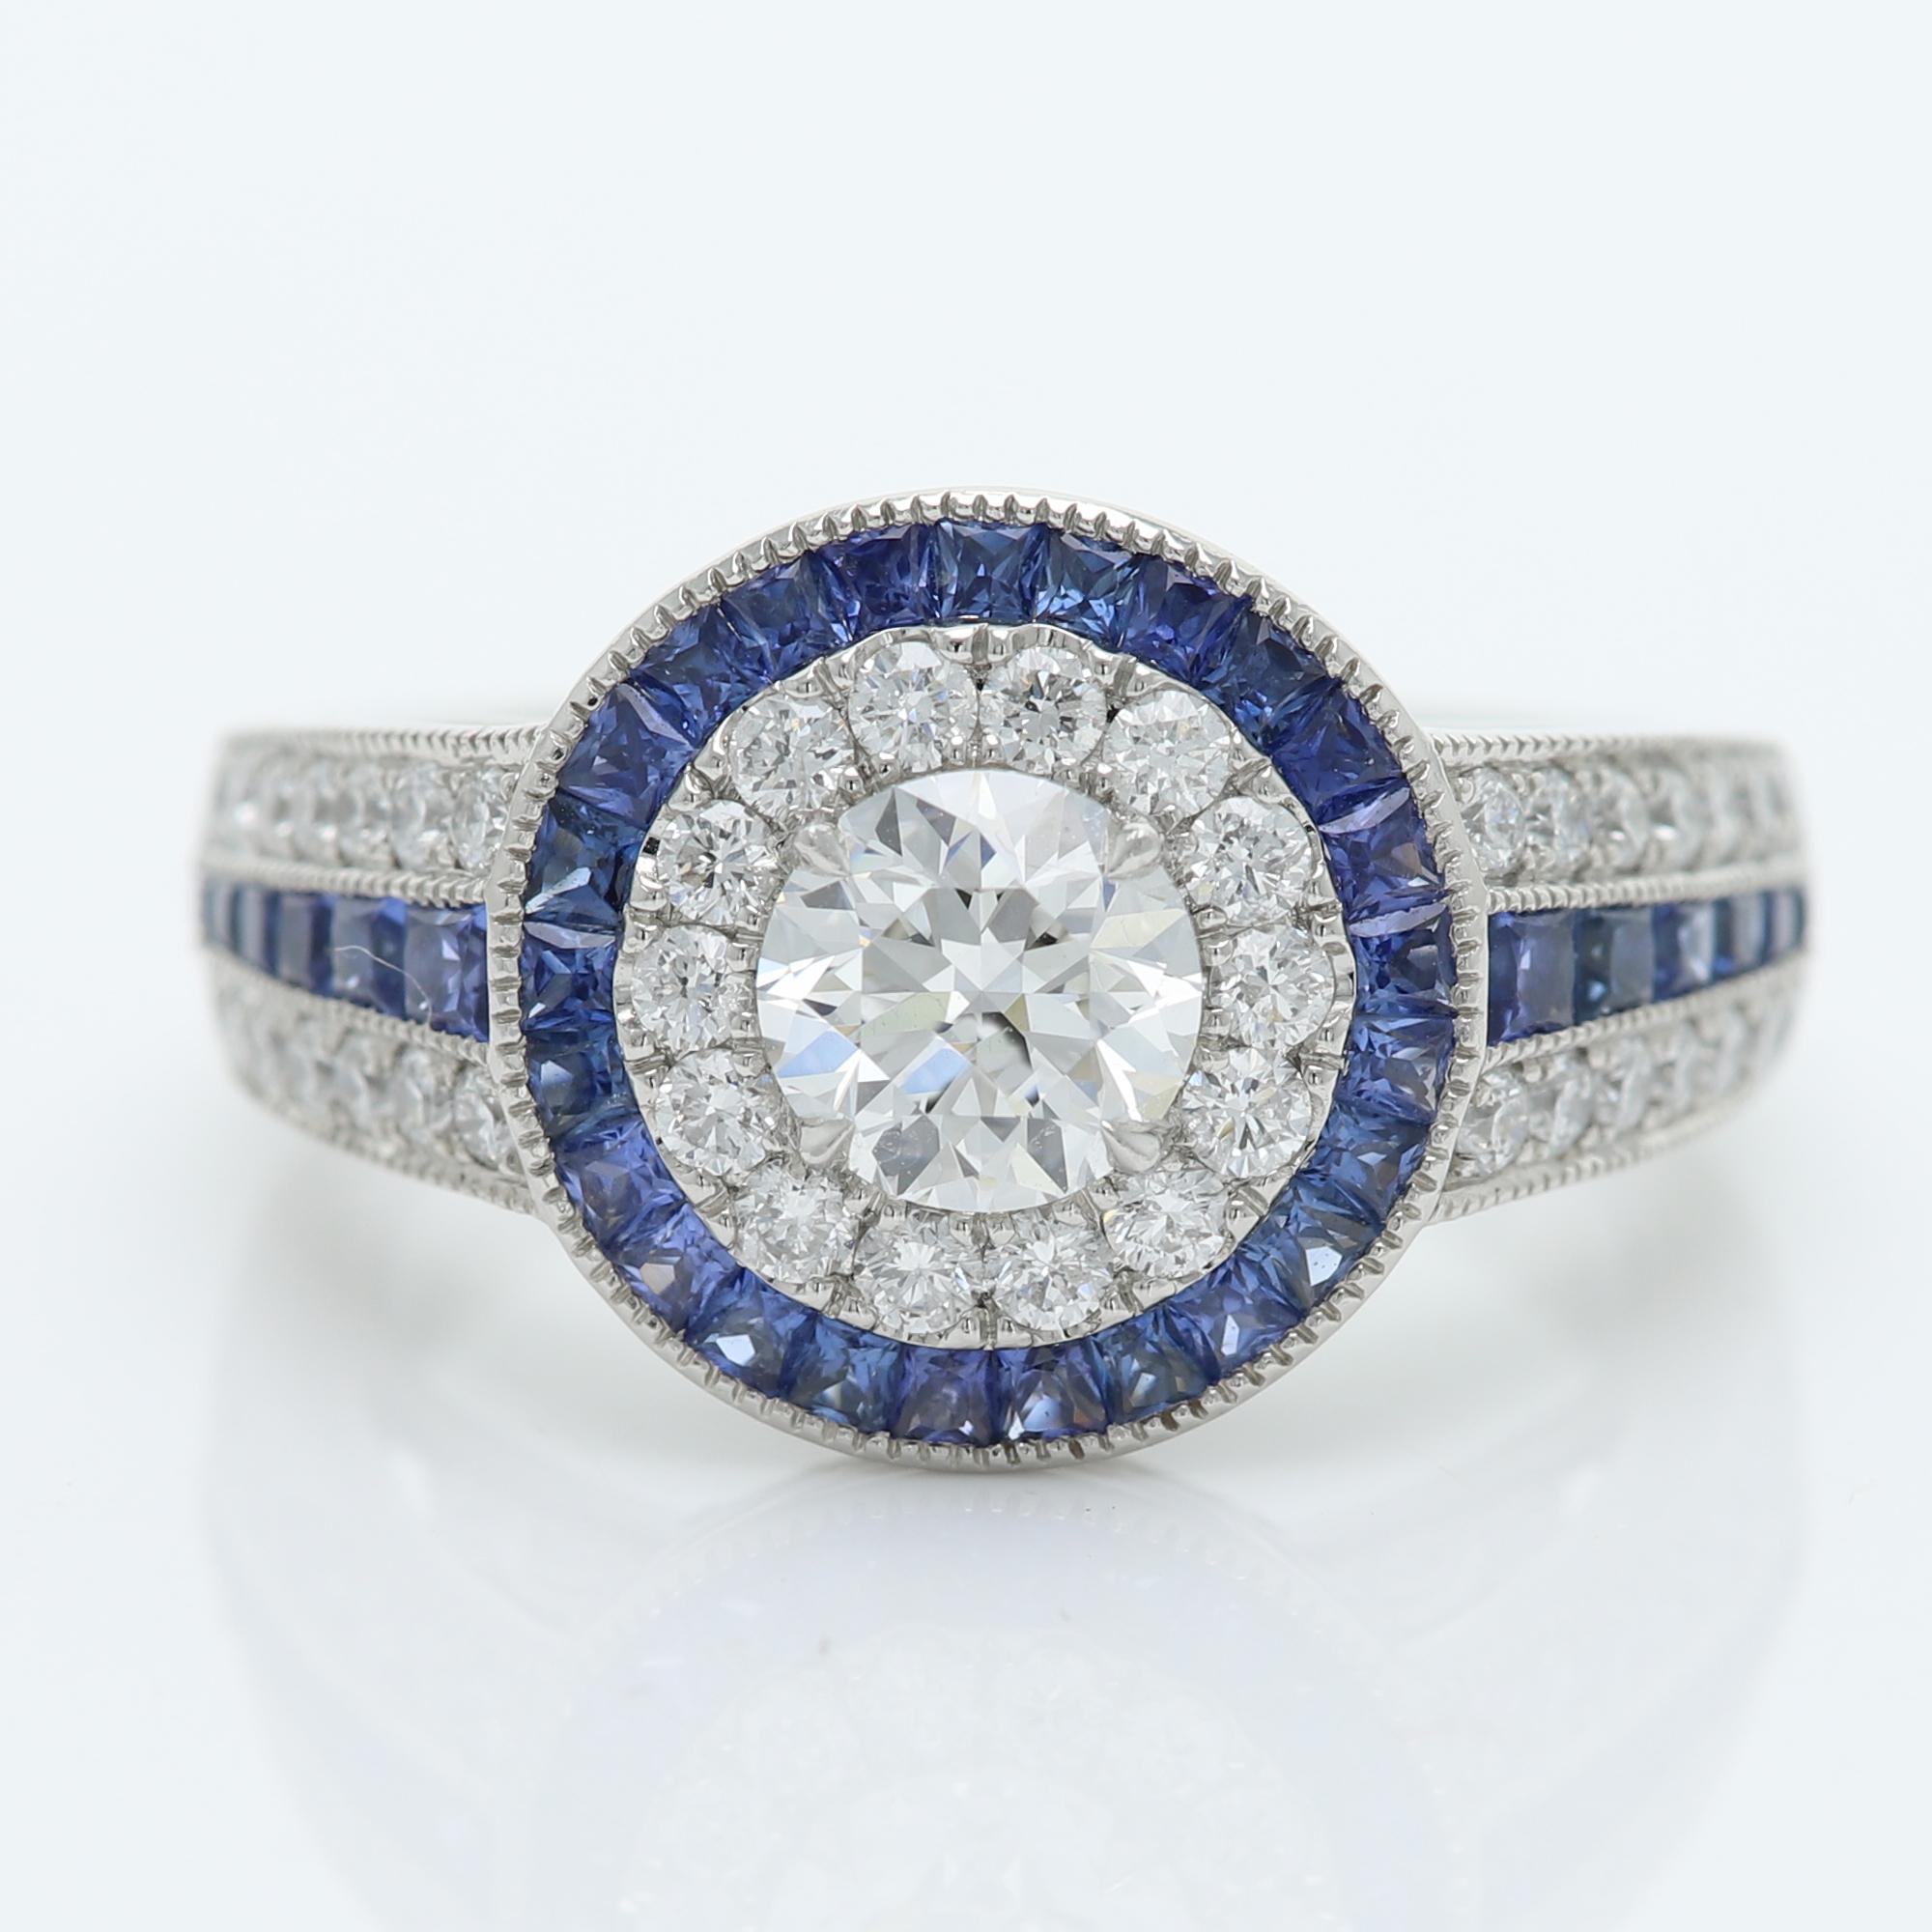 Art Deco Stil Bold Ring
In der Mitte befindet sich ein Diamant von 0,73 Karat, umgeben von einem blauen Saphir, 
Der mittlere Diamant ist ein Brillant D-VS2 (6,0 mm)
Alle Steine sind natürlich
Platin 13 Gramm
auf eine Tasse eingestellt
Kleine